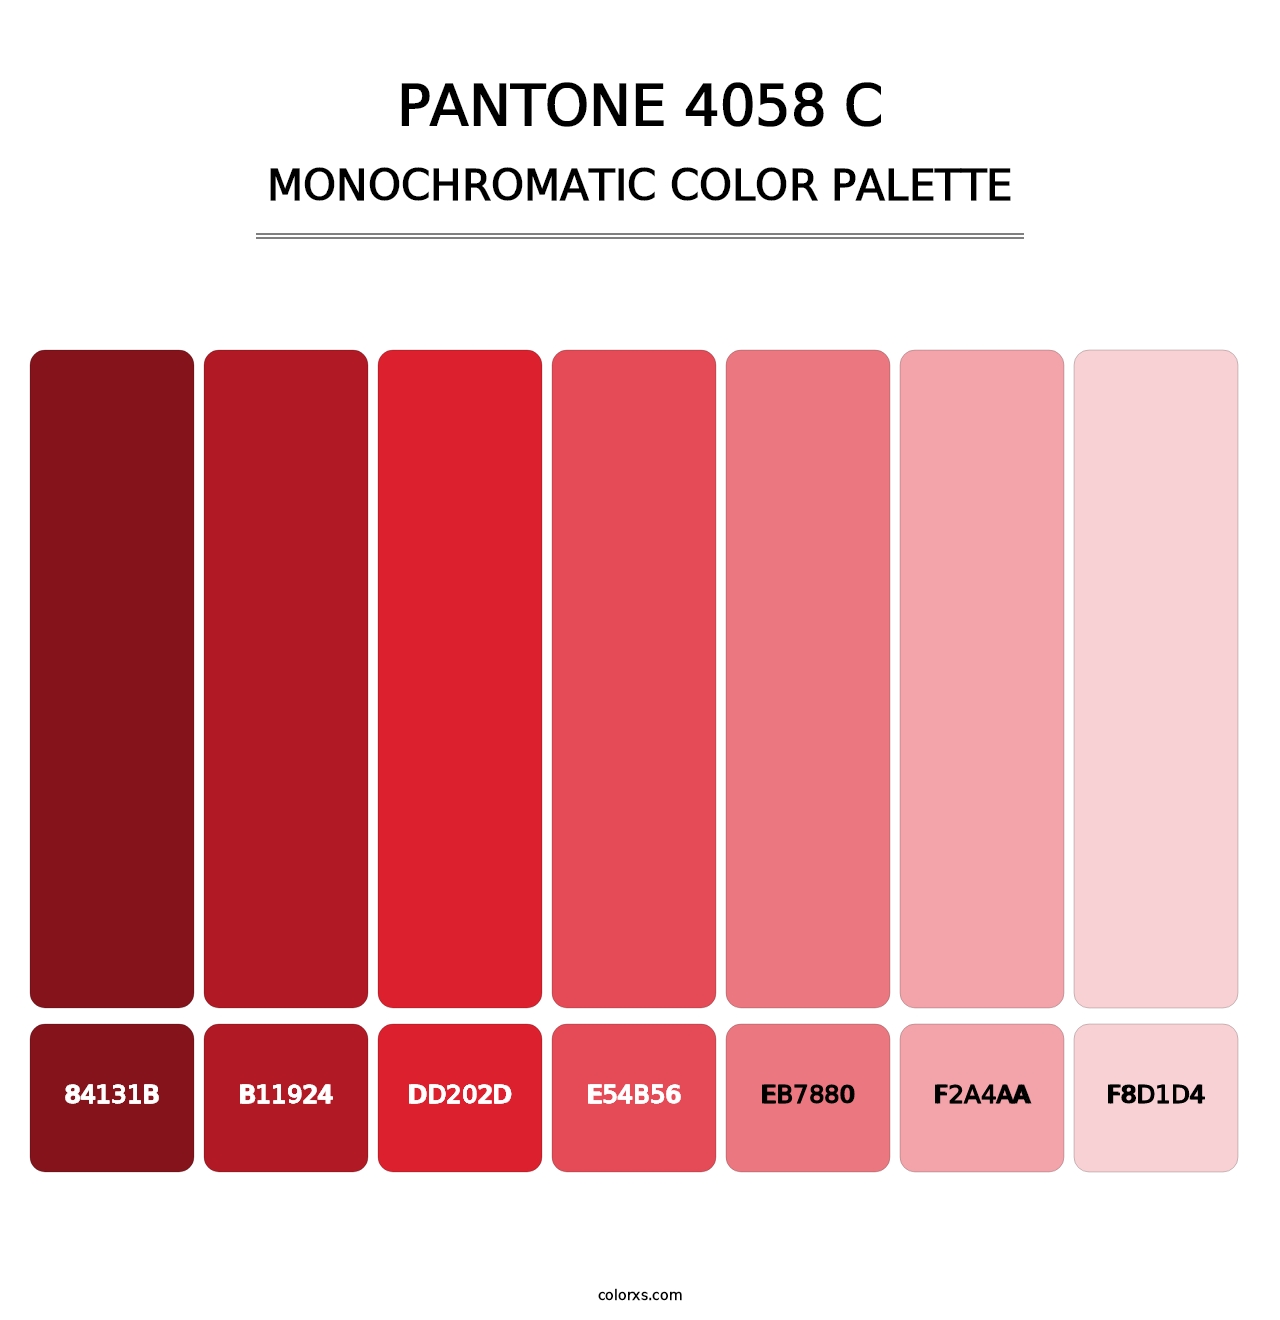 PANTONE 4058 C - Monochromatic Color Palette